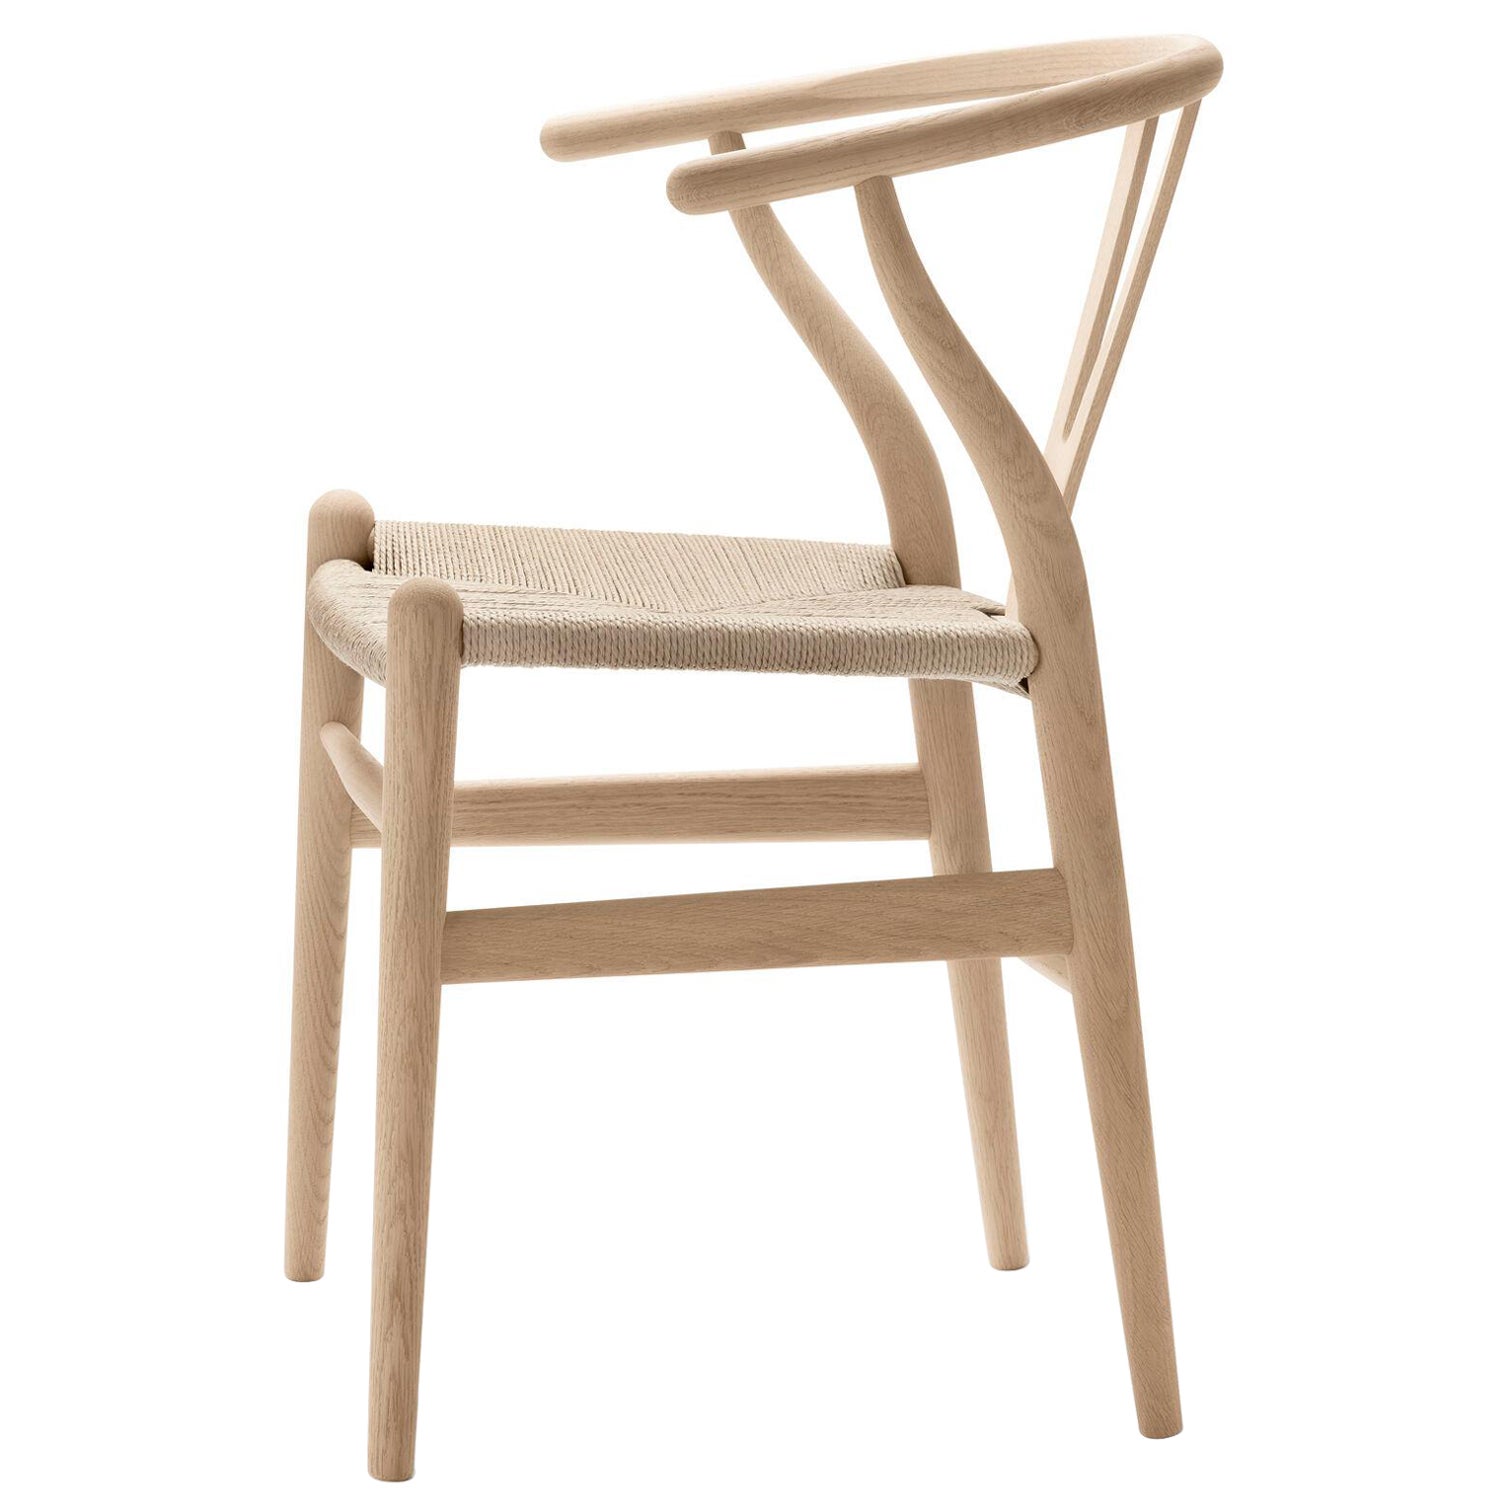 CH24 Wishbone Chair in Eiche Weiß geölt mit Naturpapierkordel *Quickship*